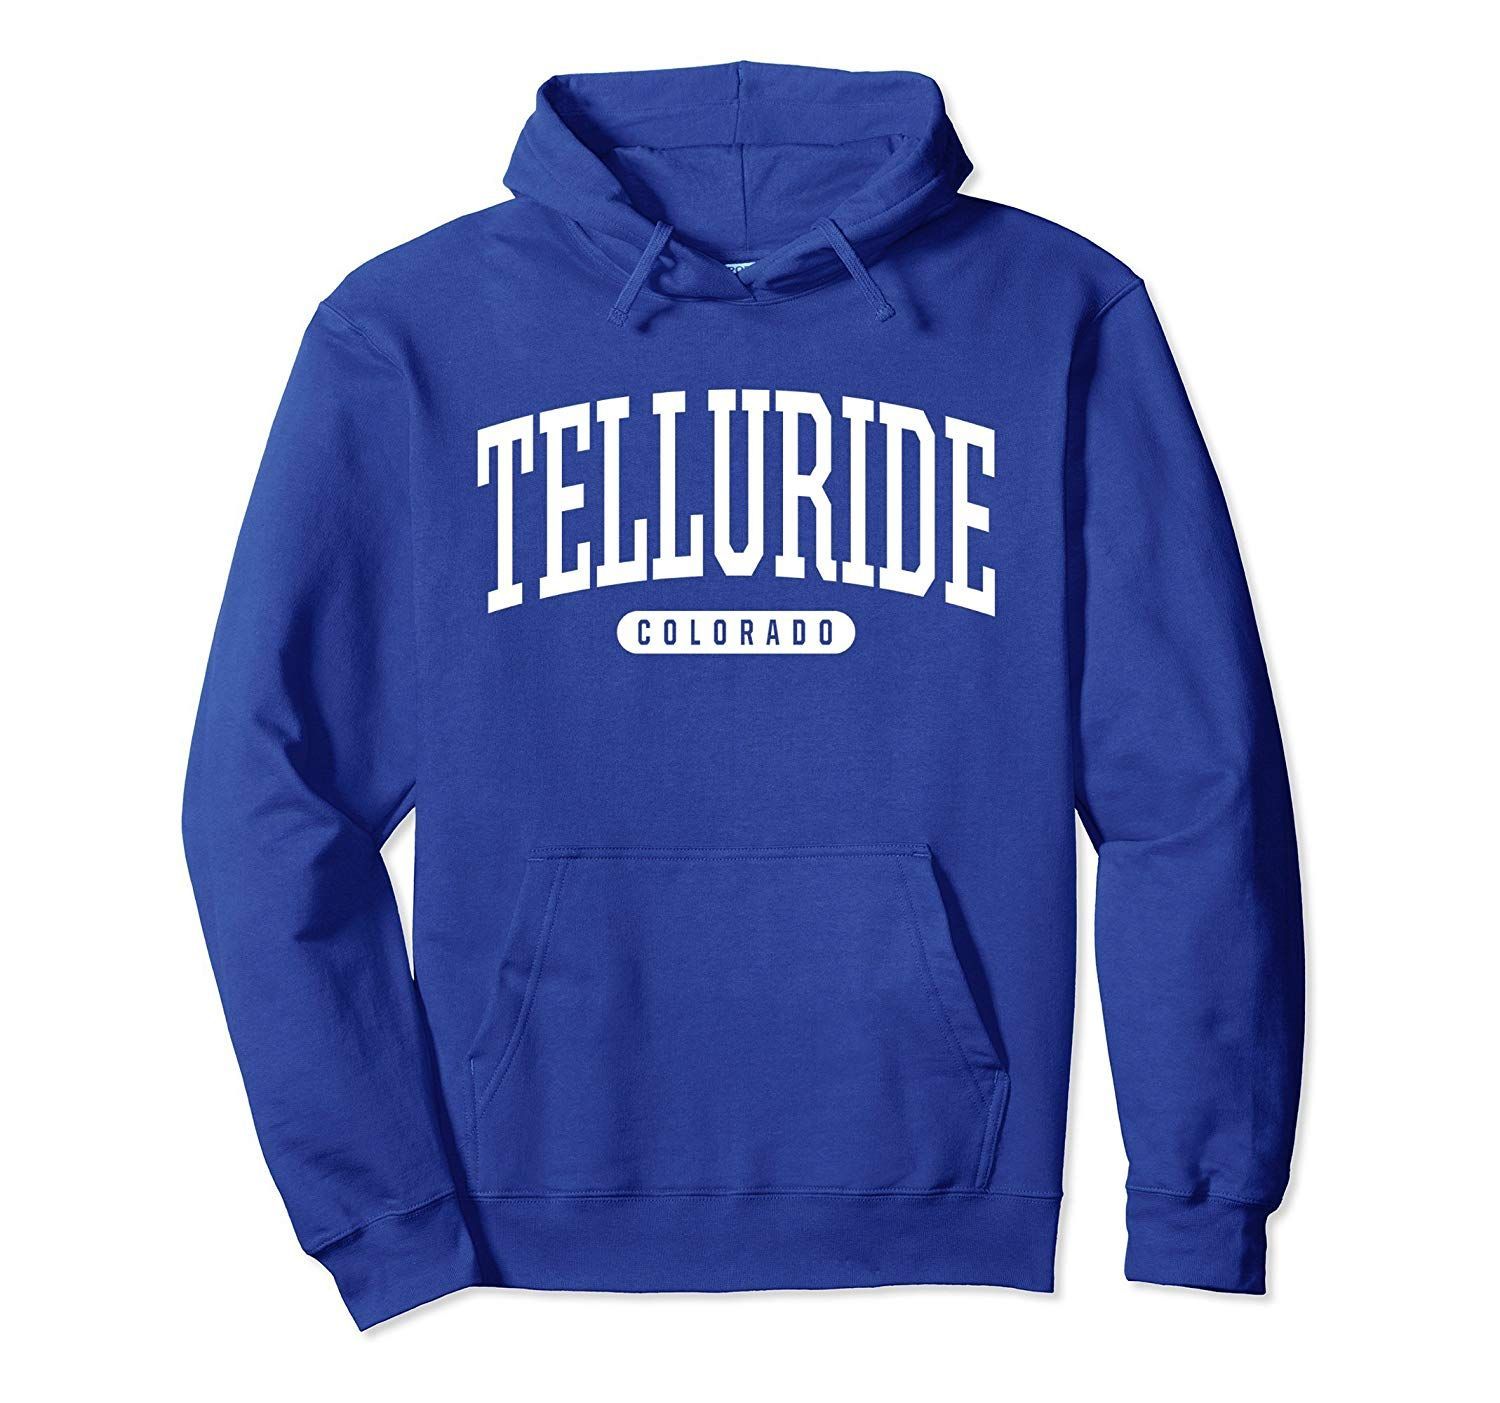 Telluride Hoodie Sweatshirt College University Style CO USA-Colonhue -   style College university